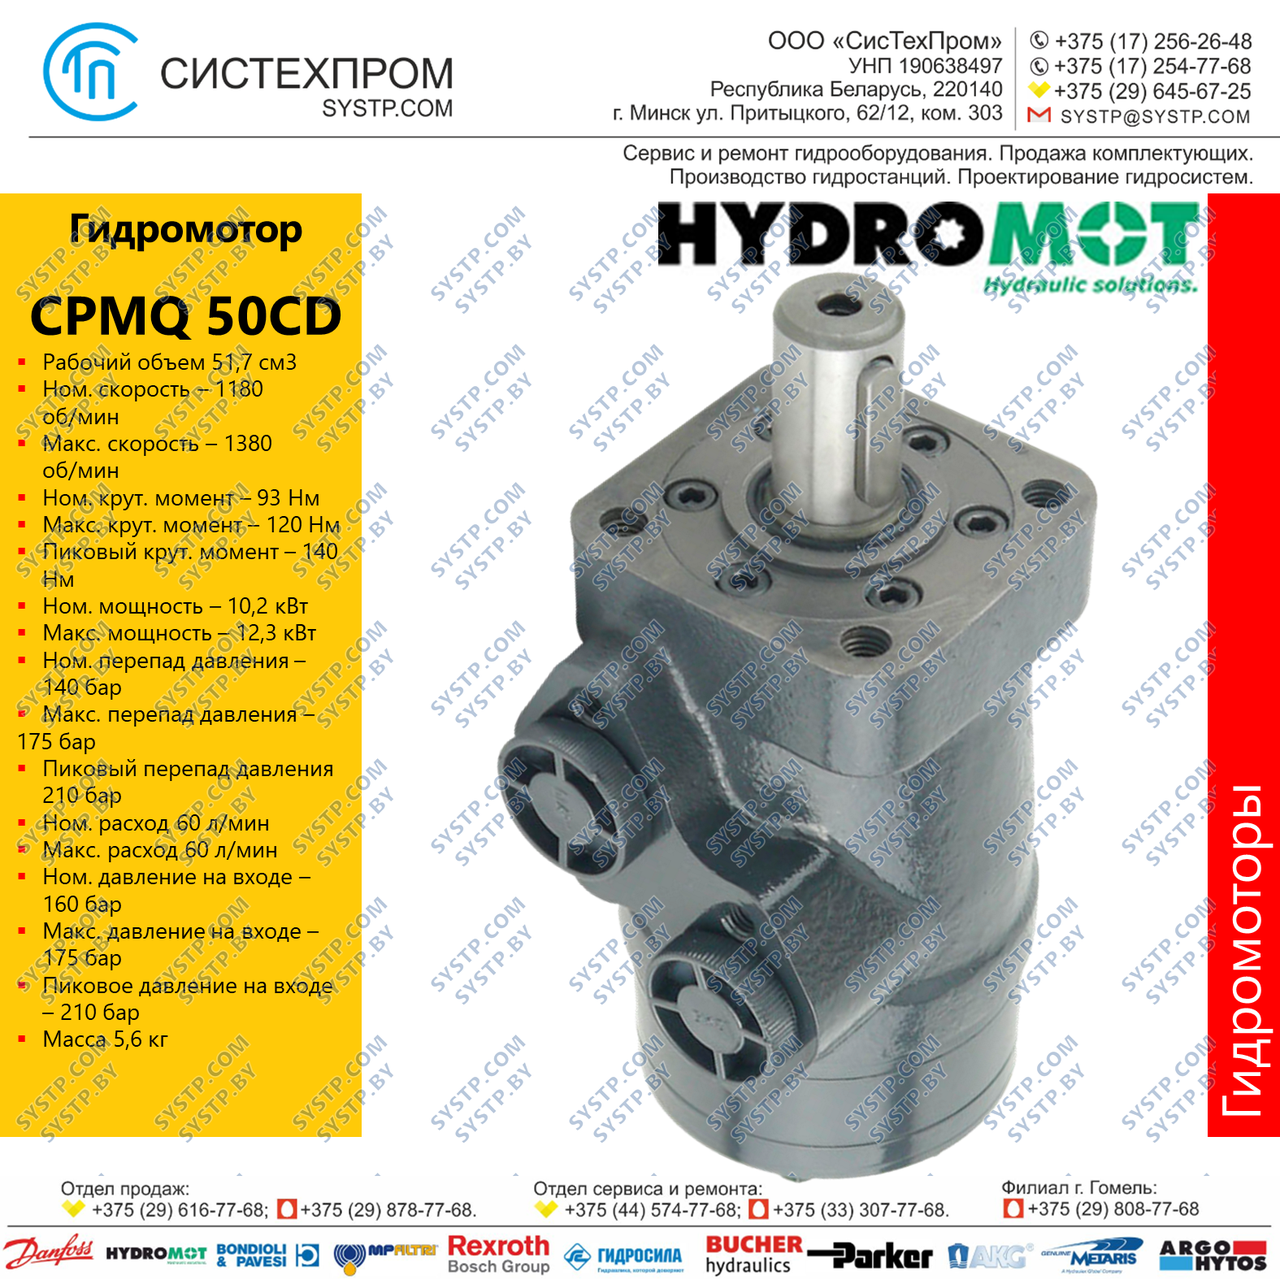 Гидромотор CPMQ 50CD, фото 1